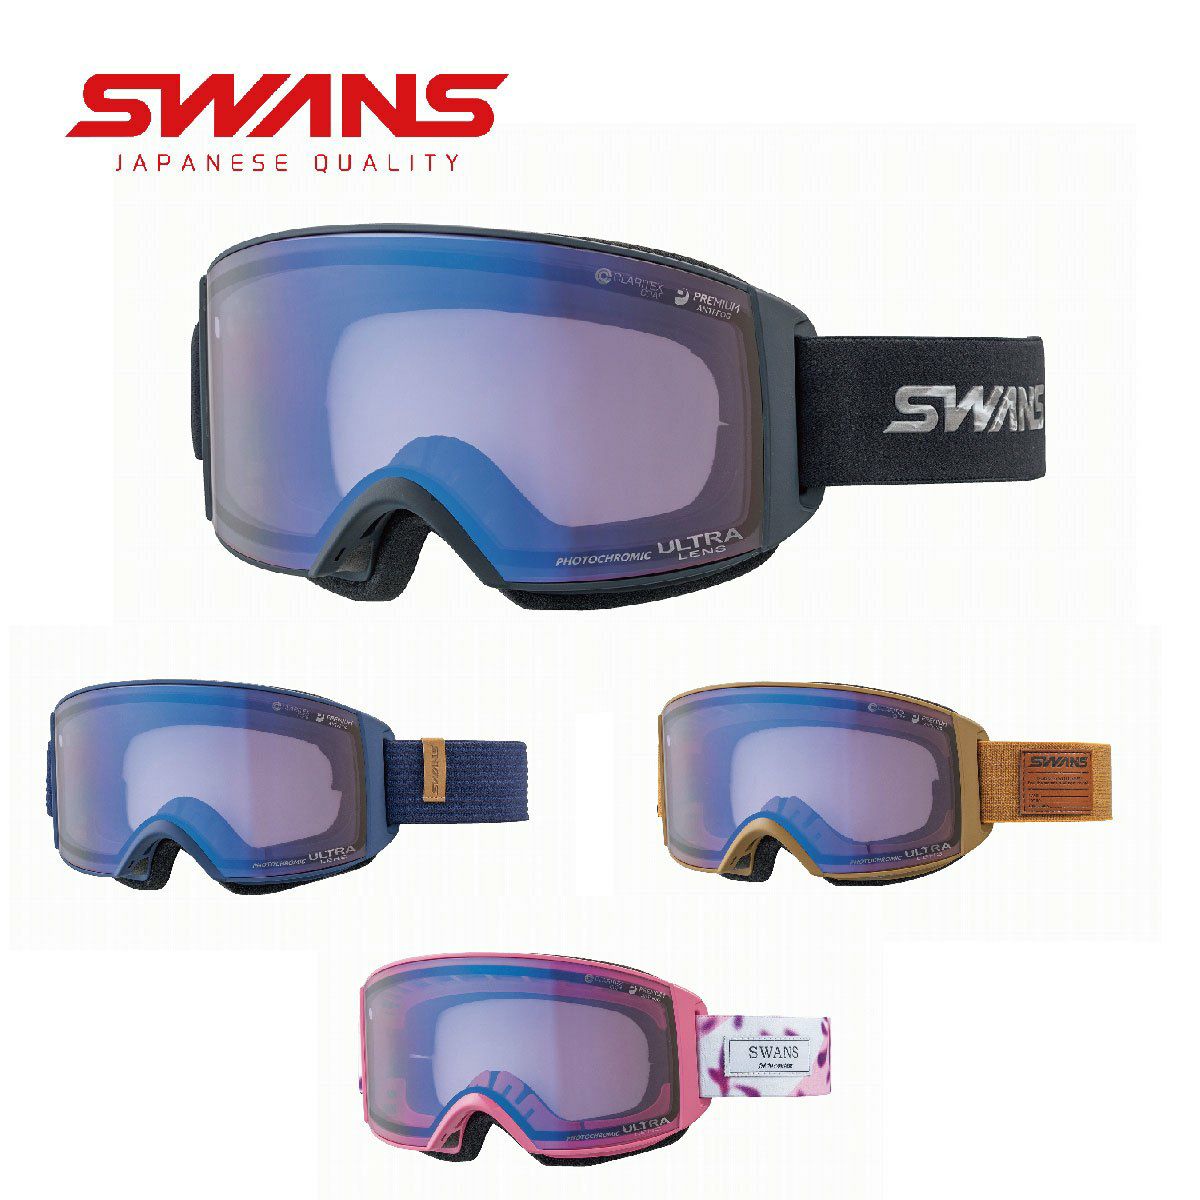 sw453) スワンズ ゴーグル ウィンタースポーツ スキー スノーボード 黒